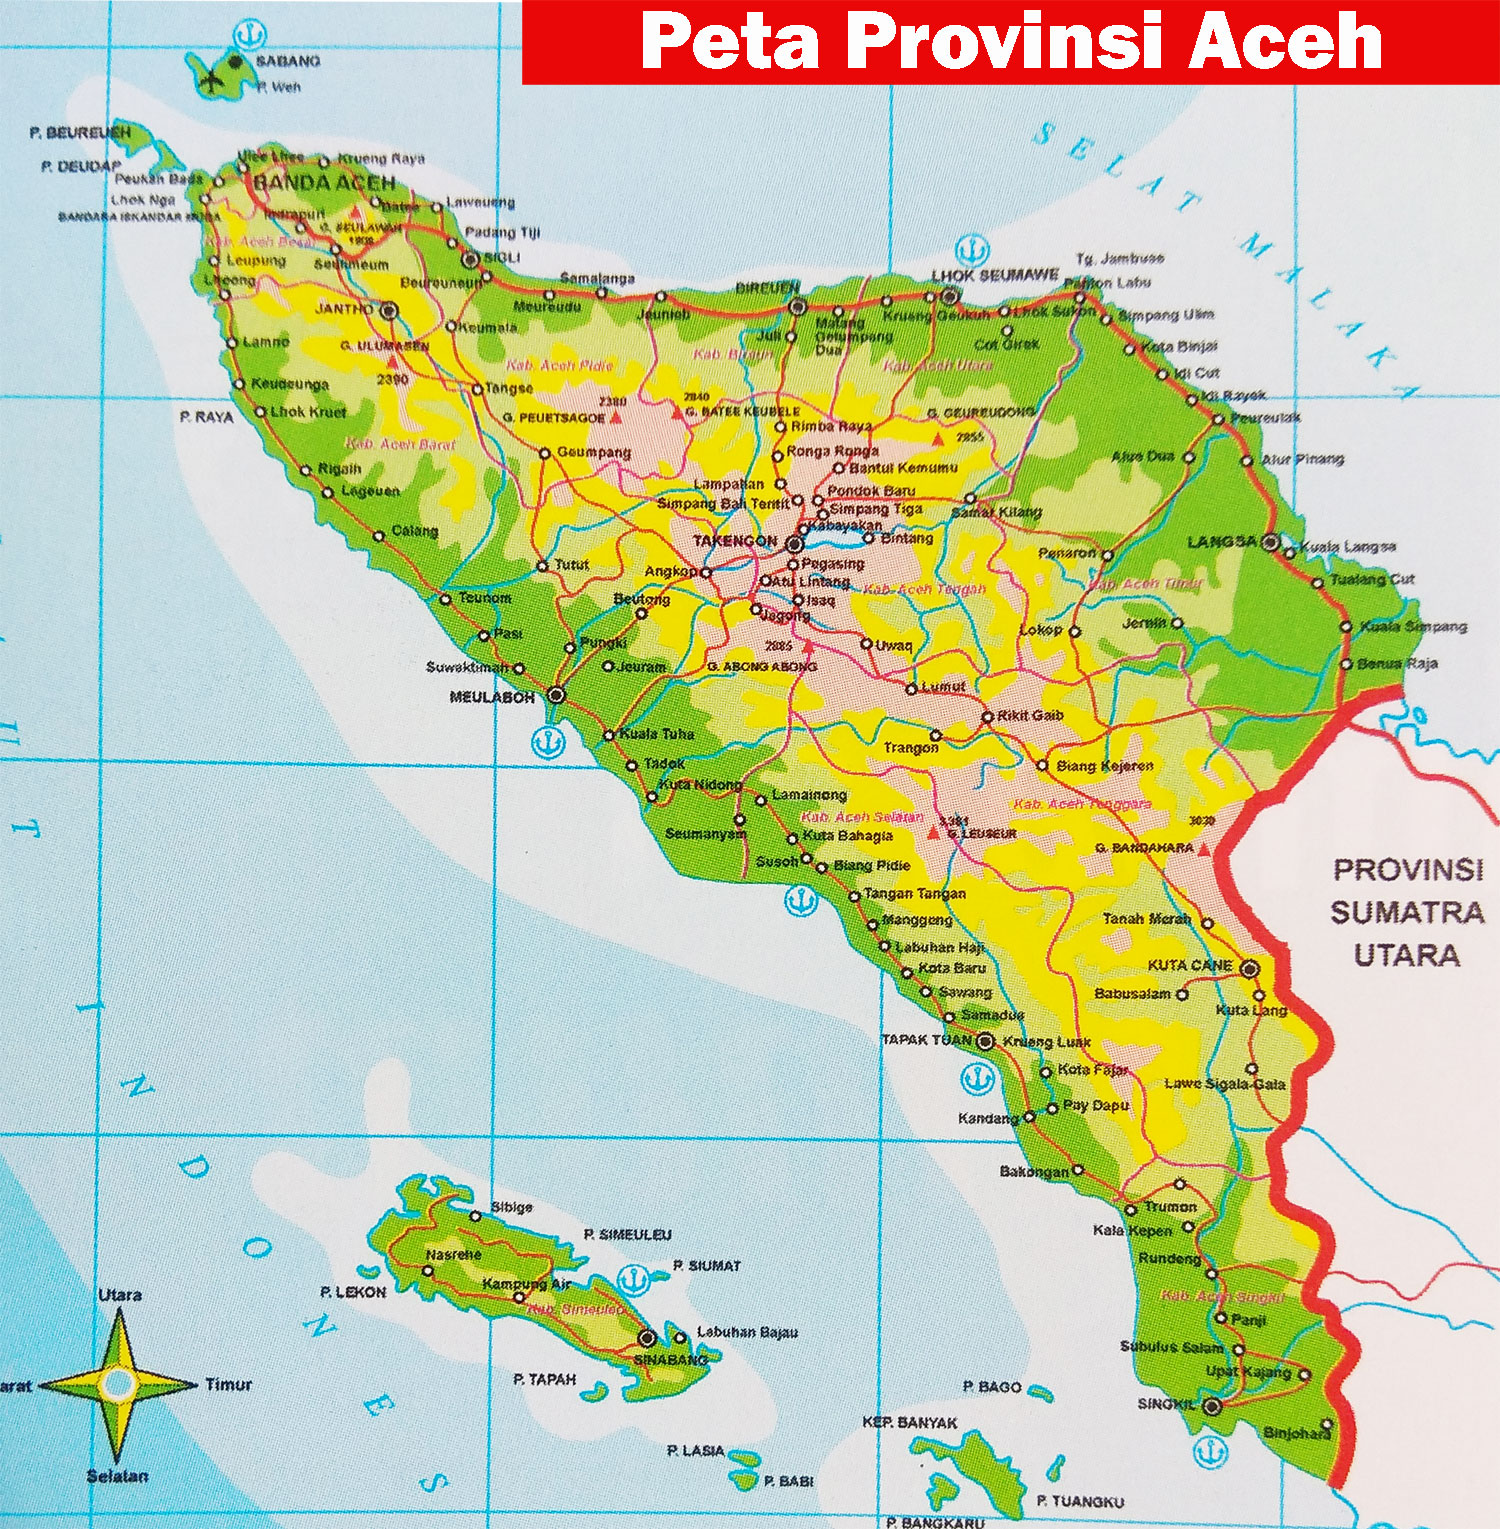 Peta-Provinsi-Aceh.jpg